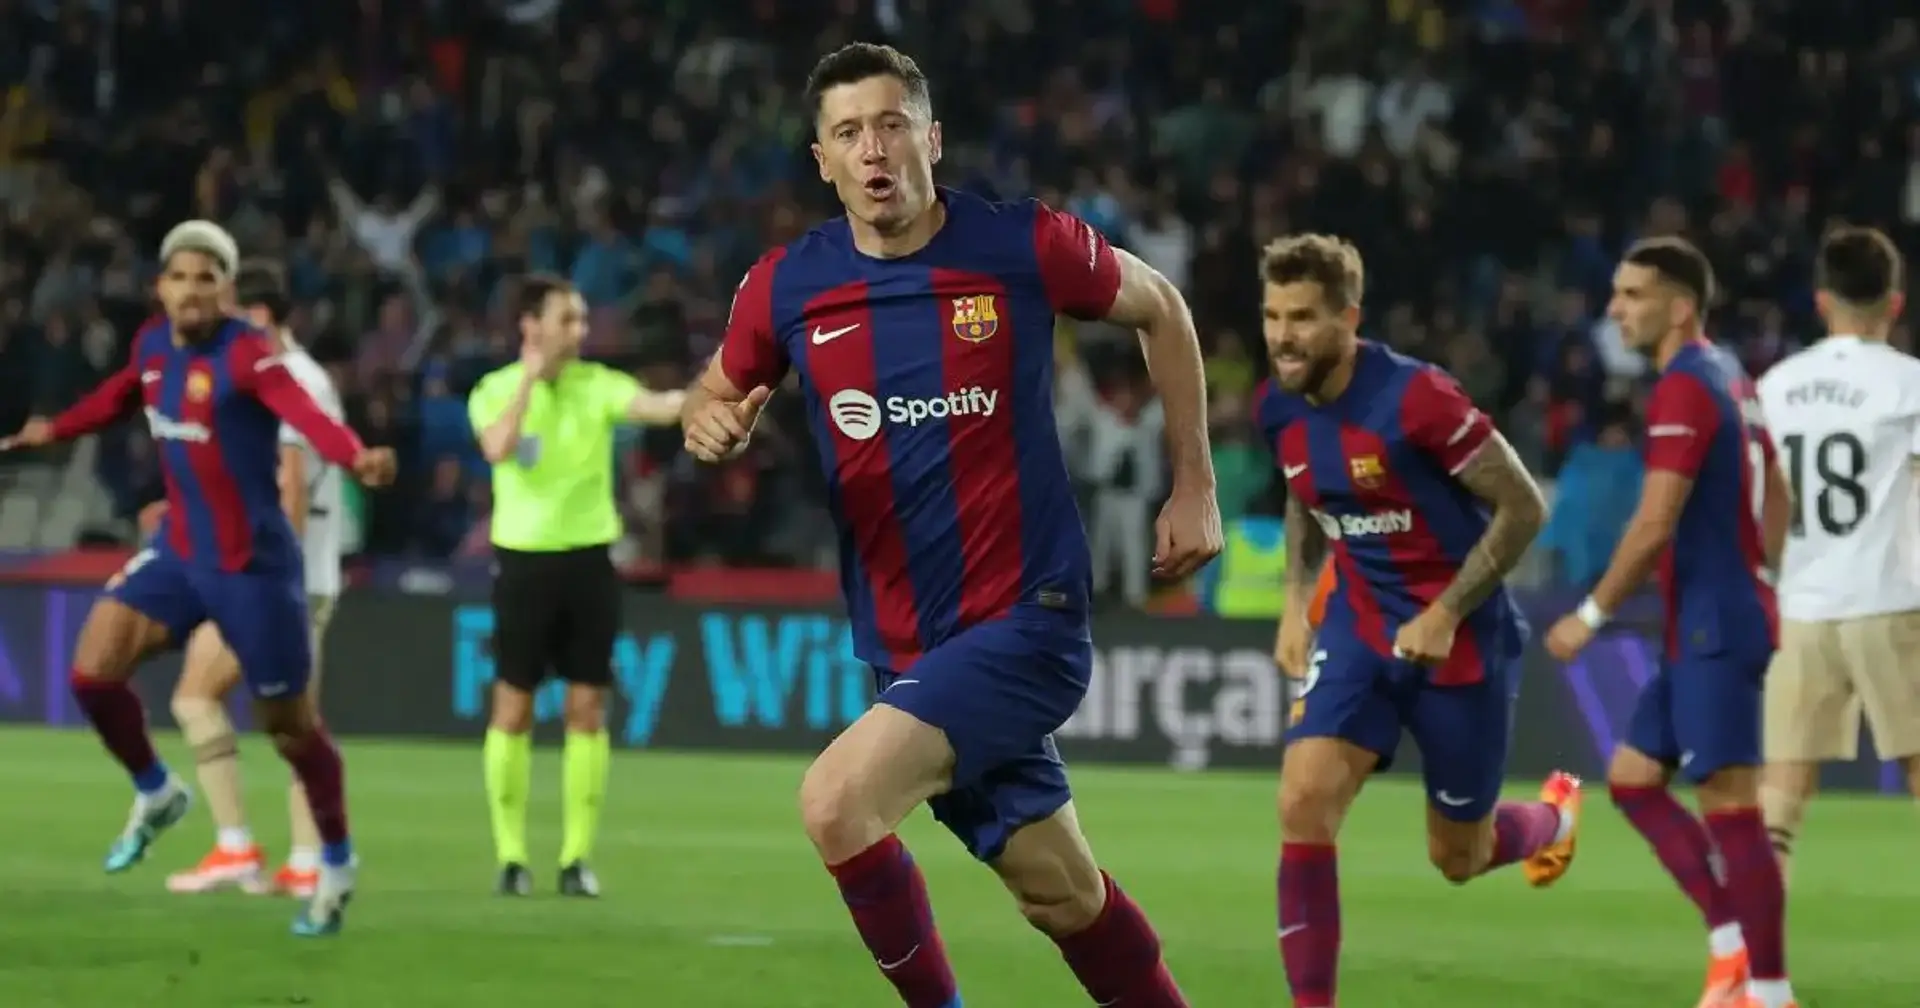 RÉVÉLÉ: un joueur du Barça a refusé de célébrer le but de Lewandowski contre Valence